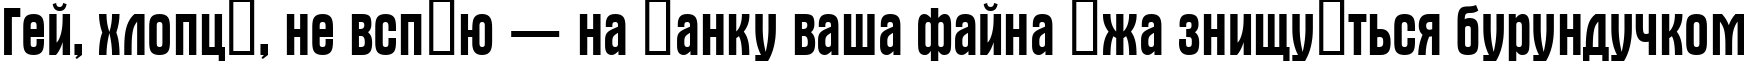 Пример написания шрифтом a_AlternaNr текста на украинском